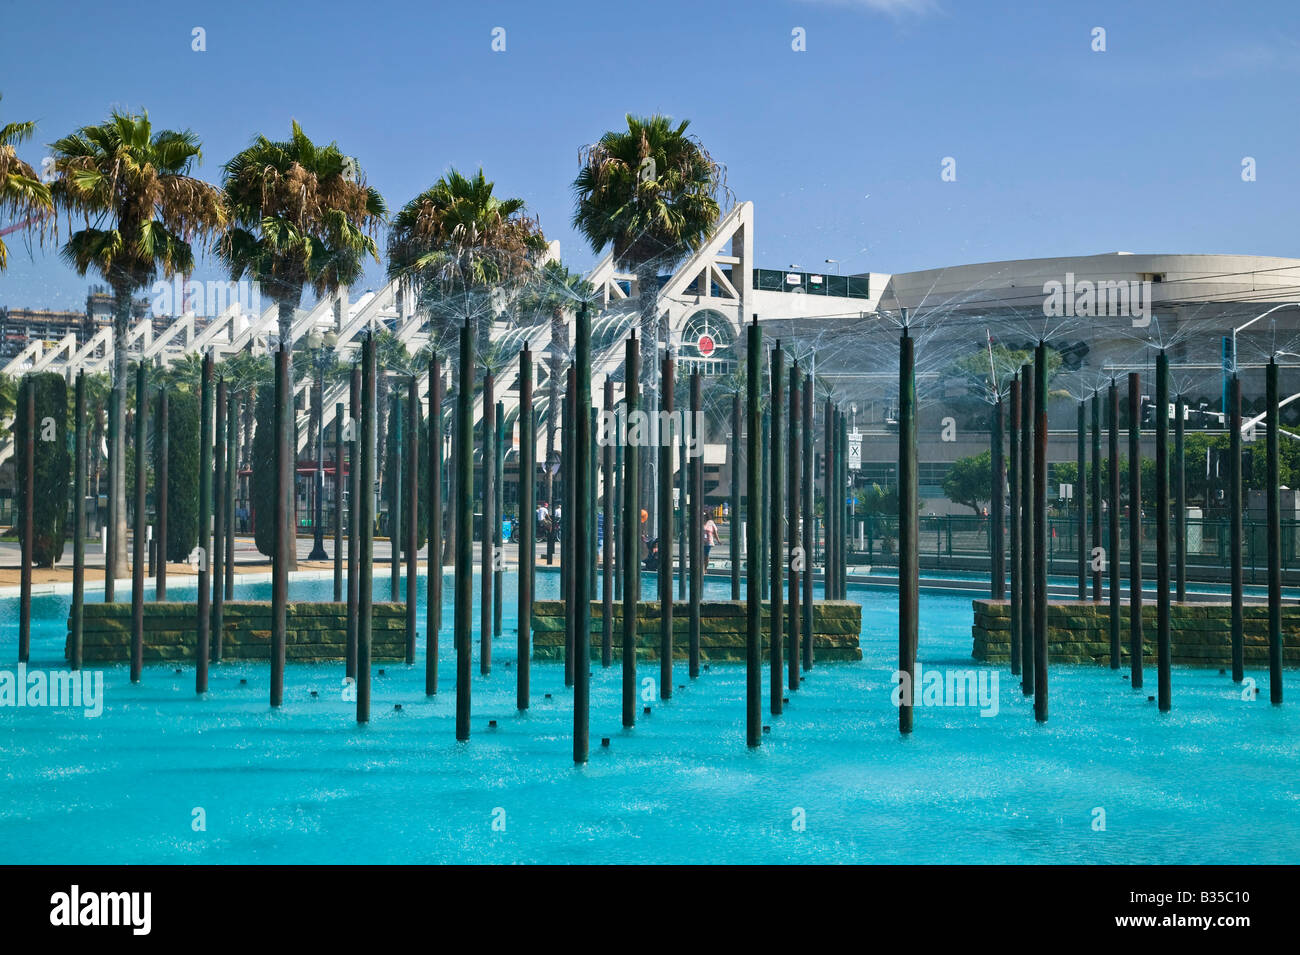 Centro de Convenciones y área de parque infantil de San Diego, California, EE.UU. Foto de stock